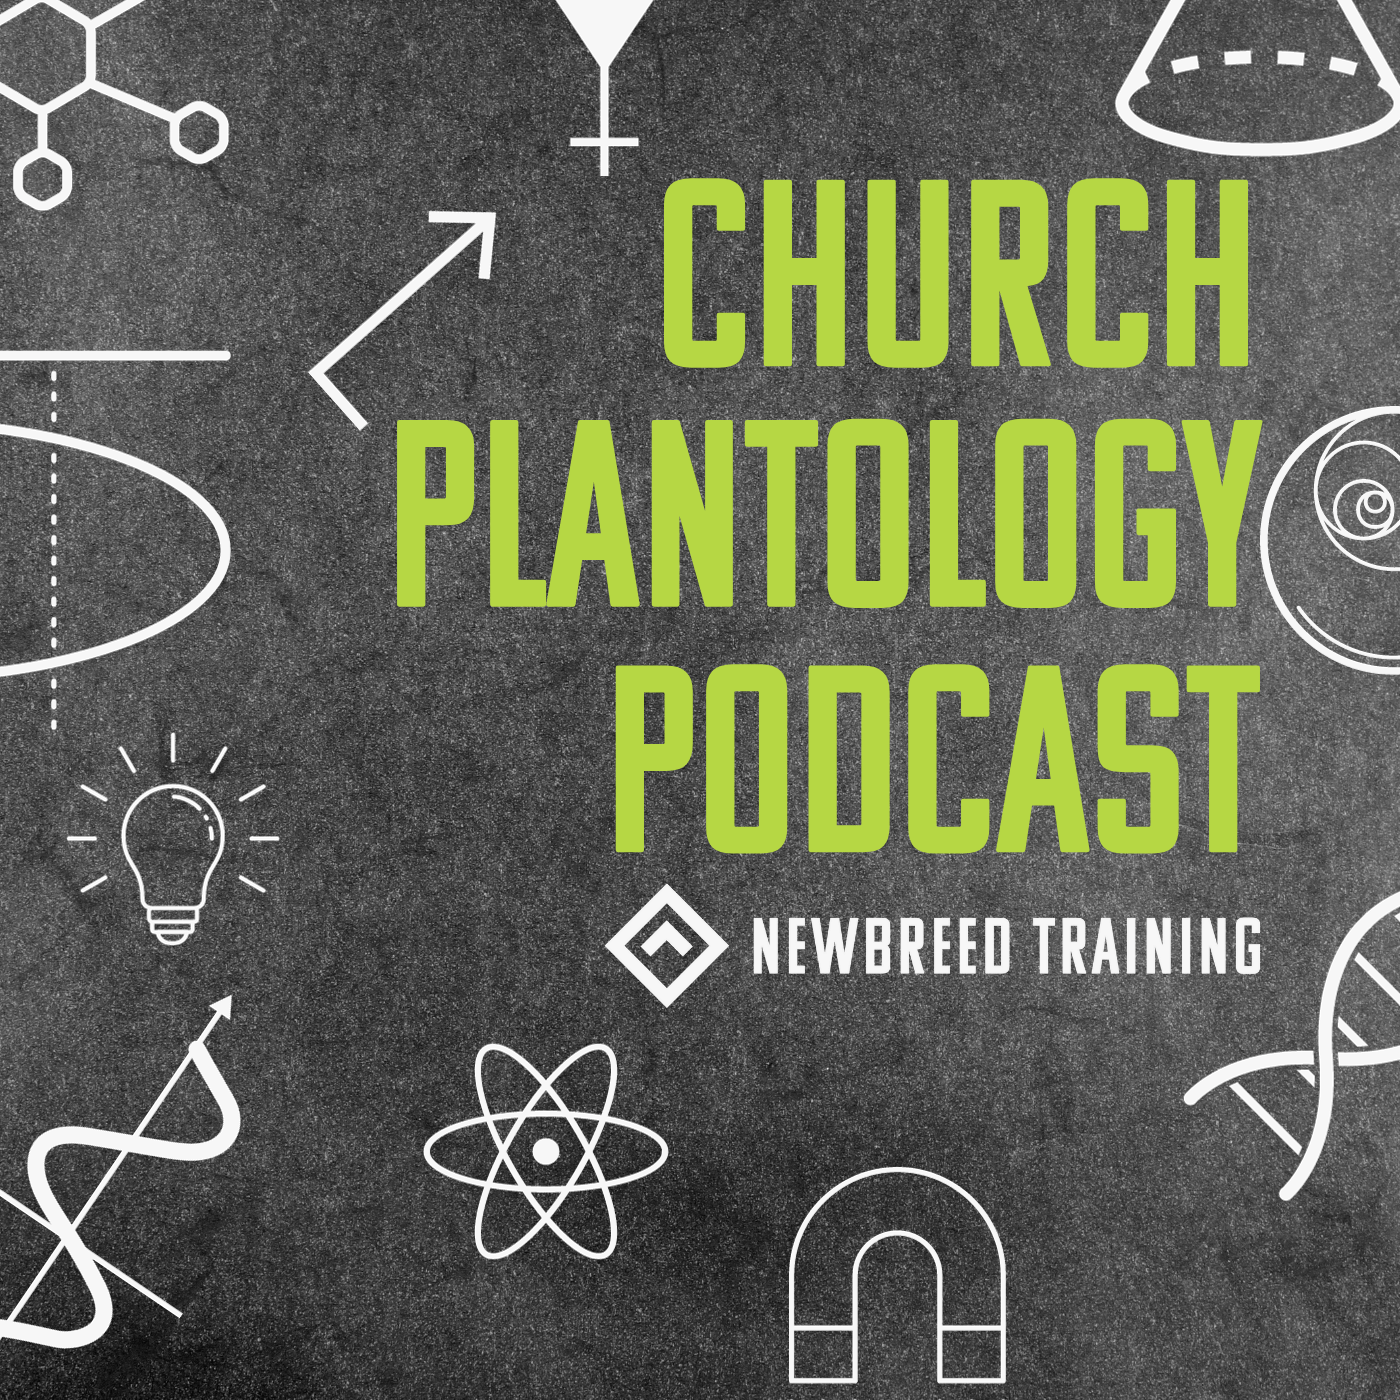 Plantology Podcast